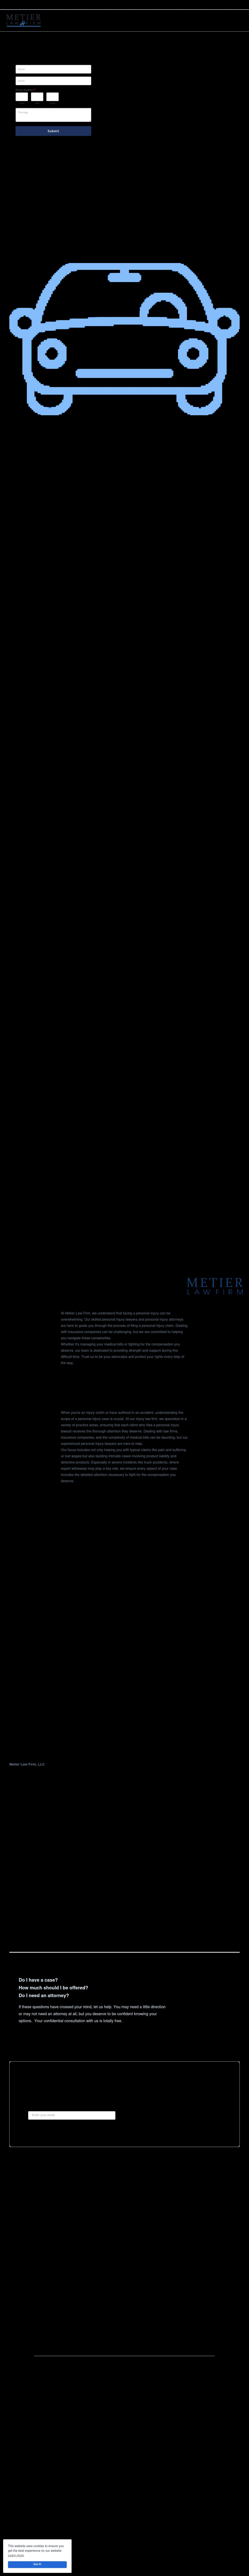 Metier Law Firm - Cheyenne WY Lawyers